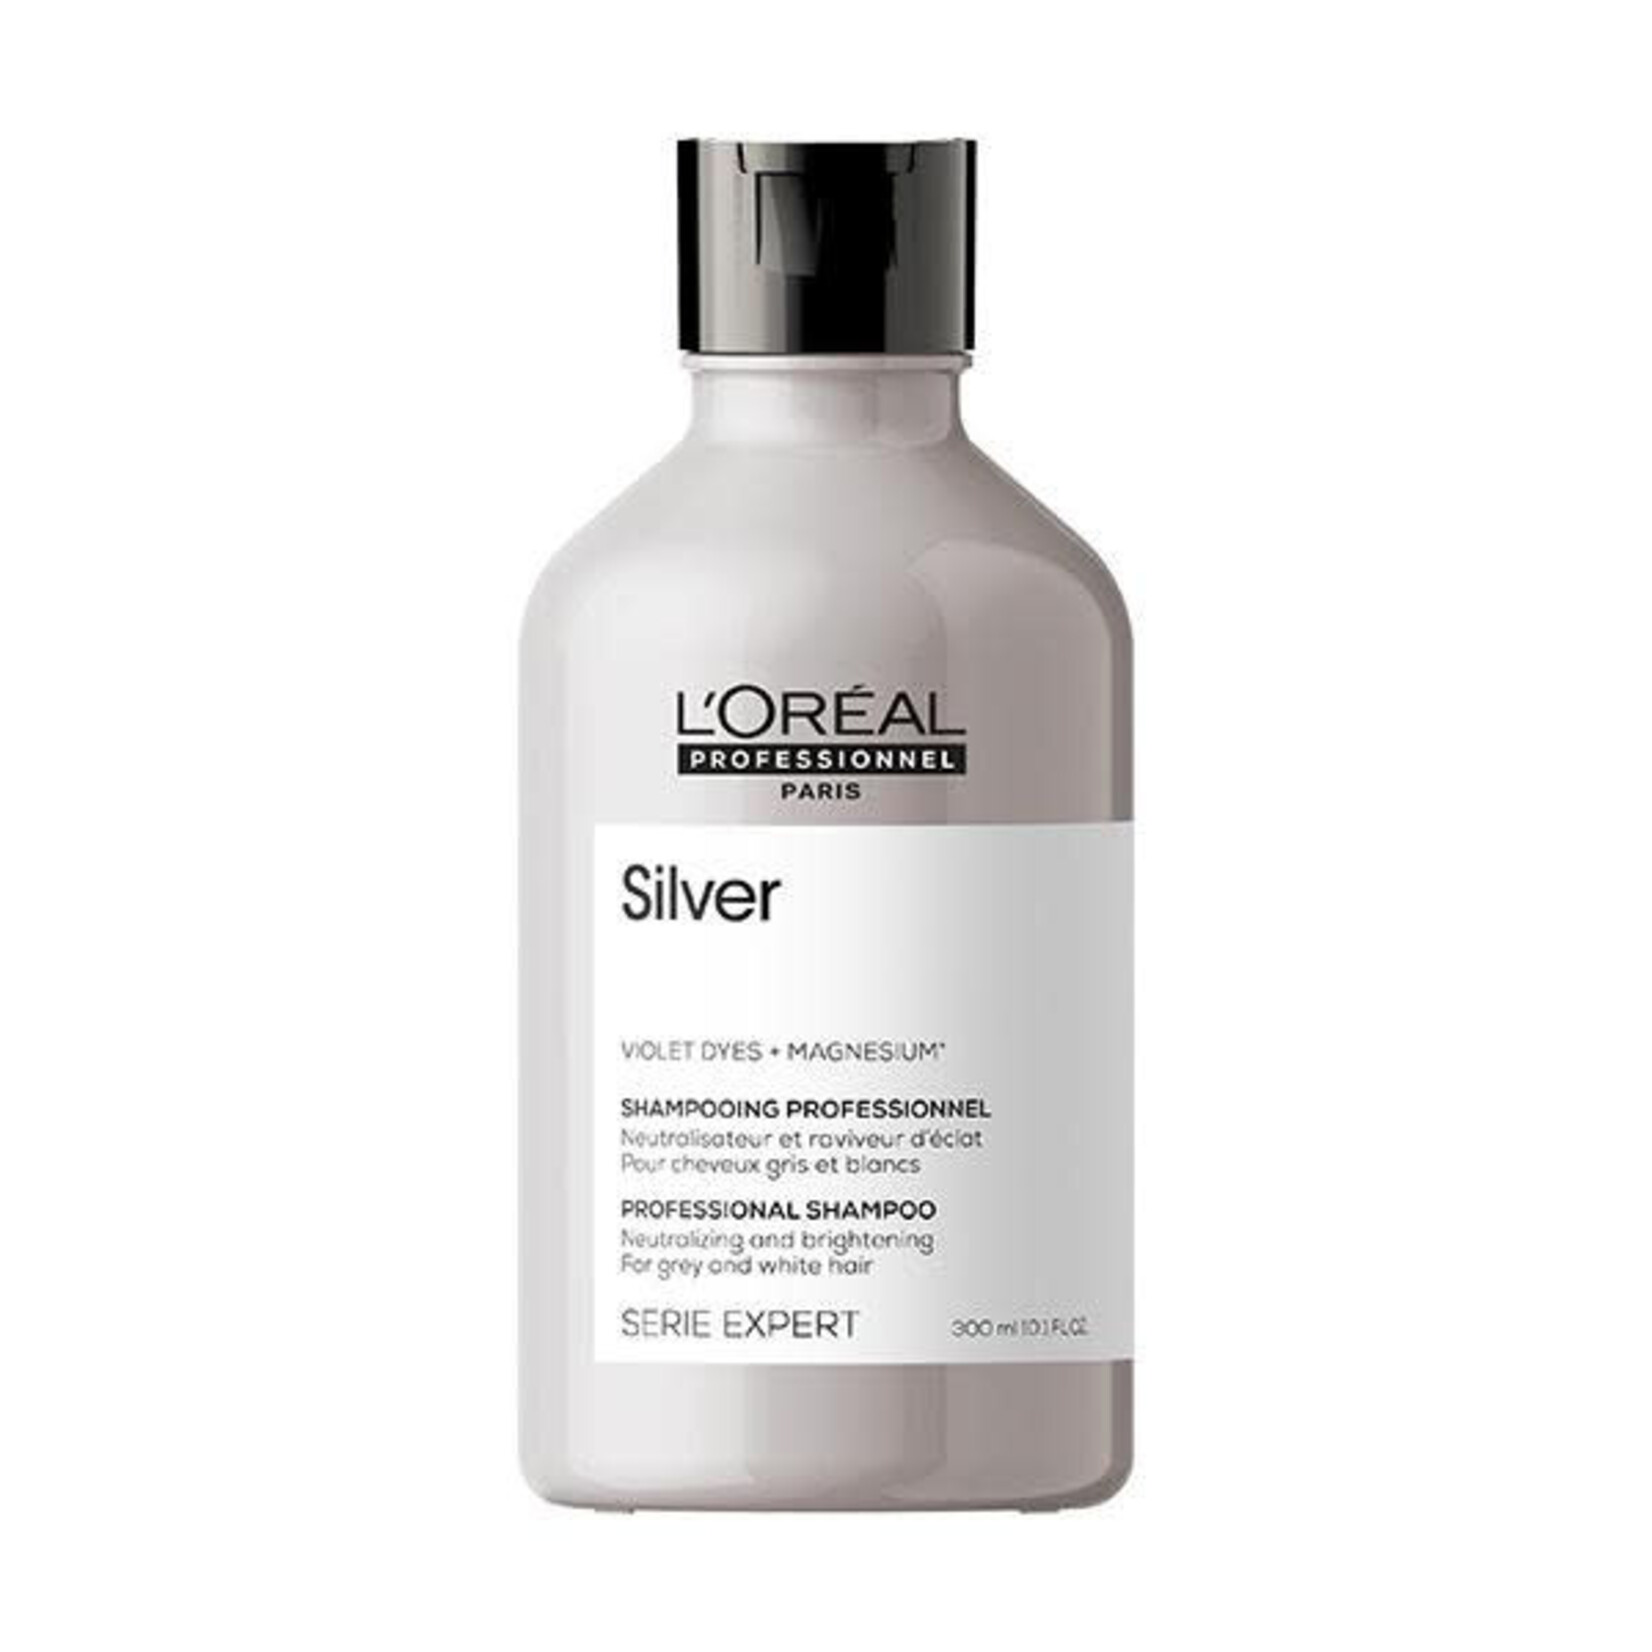 L'Oréal L'Oréal Professionnel - Silver - Shampoo 300ml